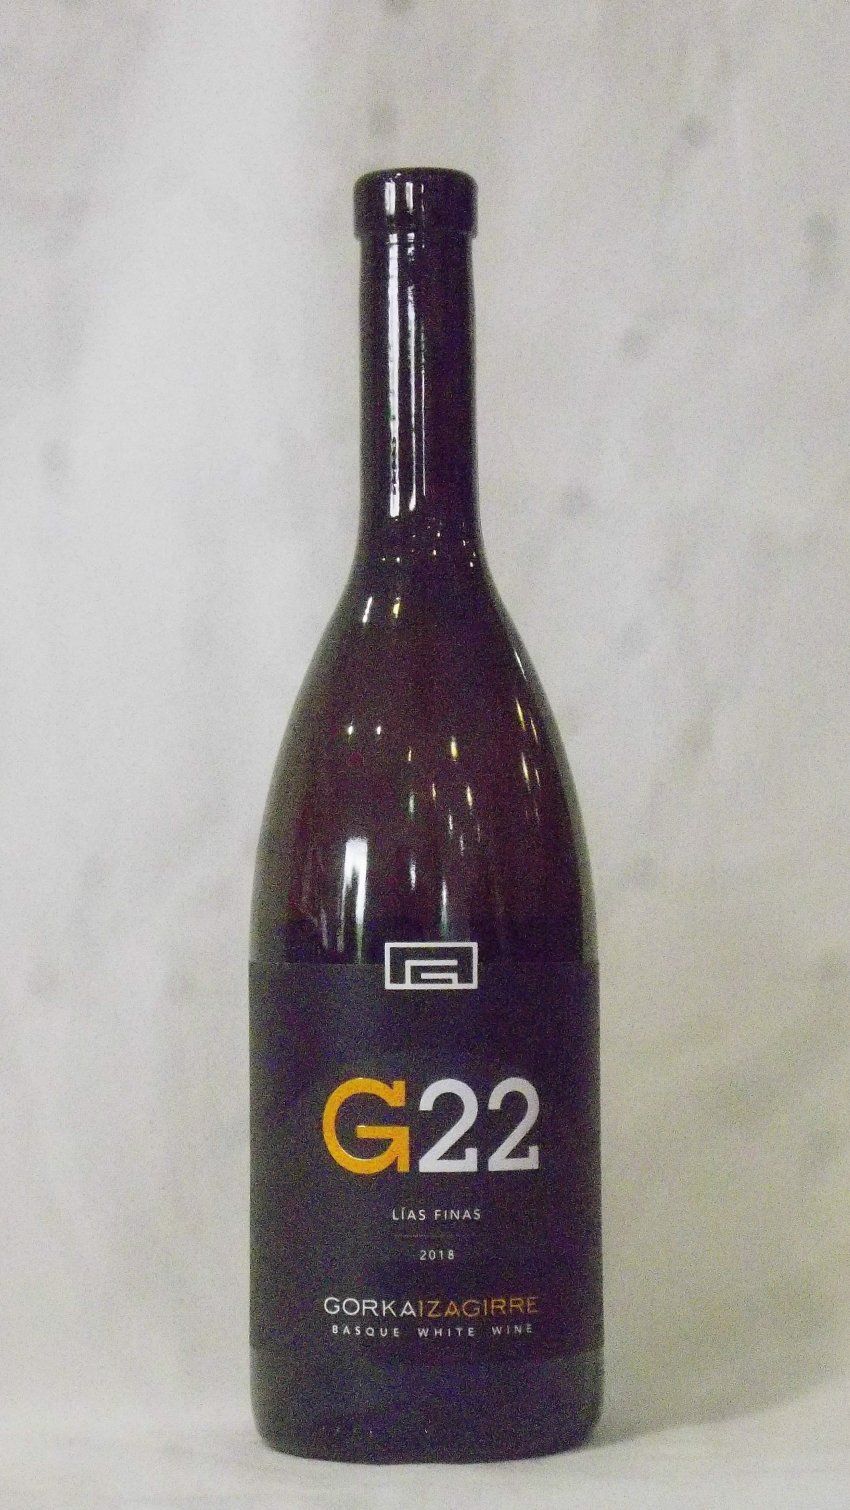 g22